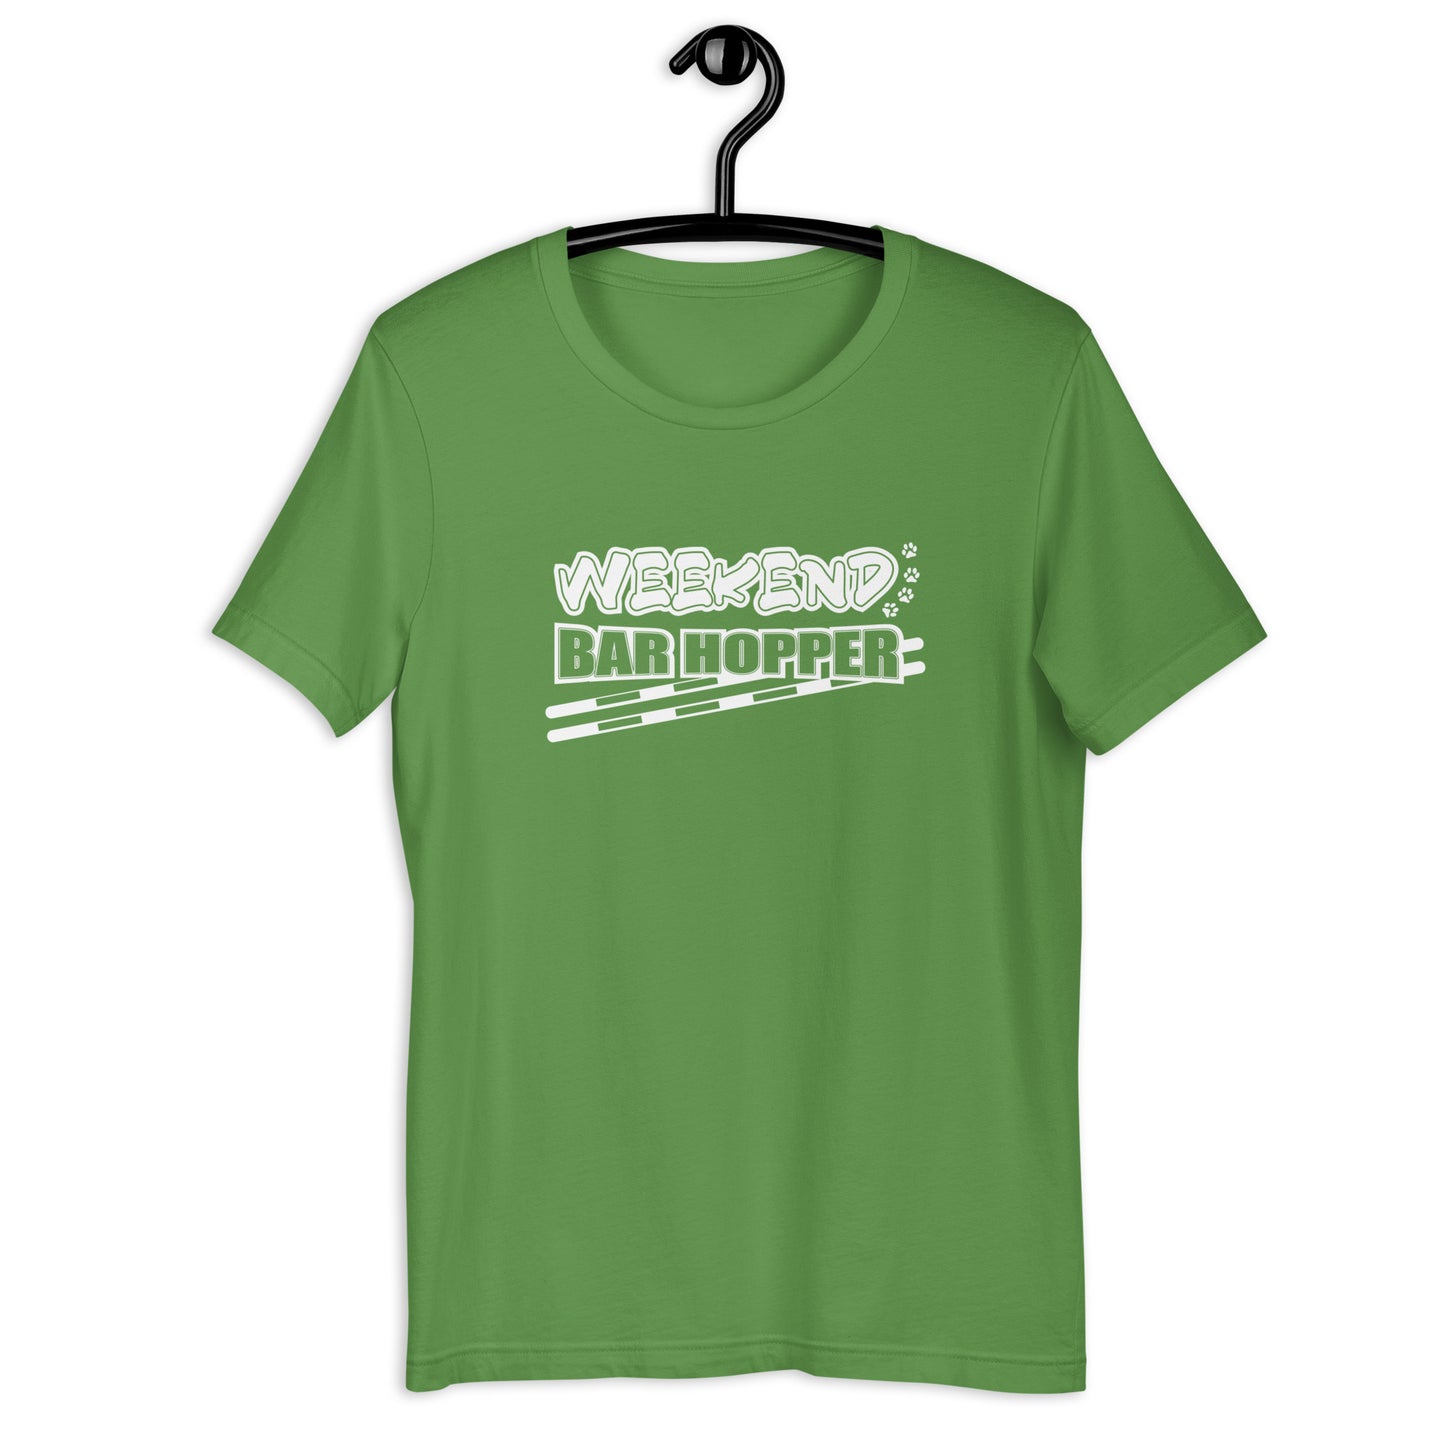 WEEKEND BAR HOPPER - Unisex t-shirt